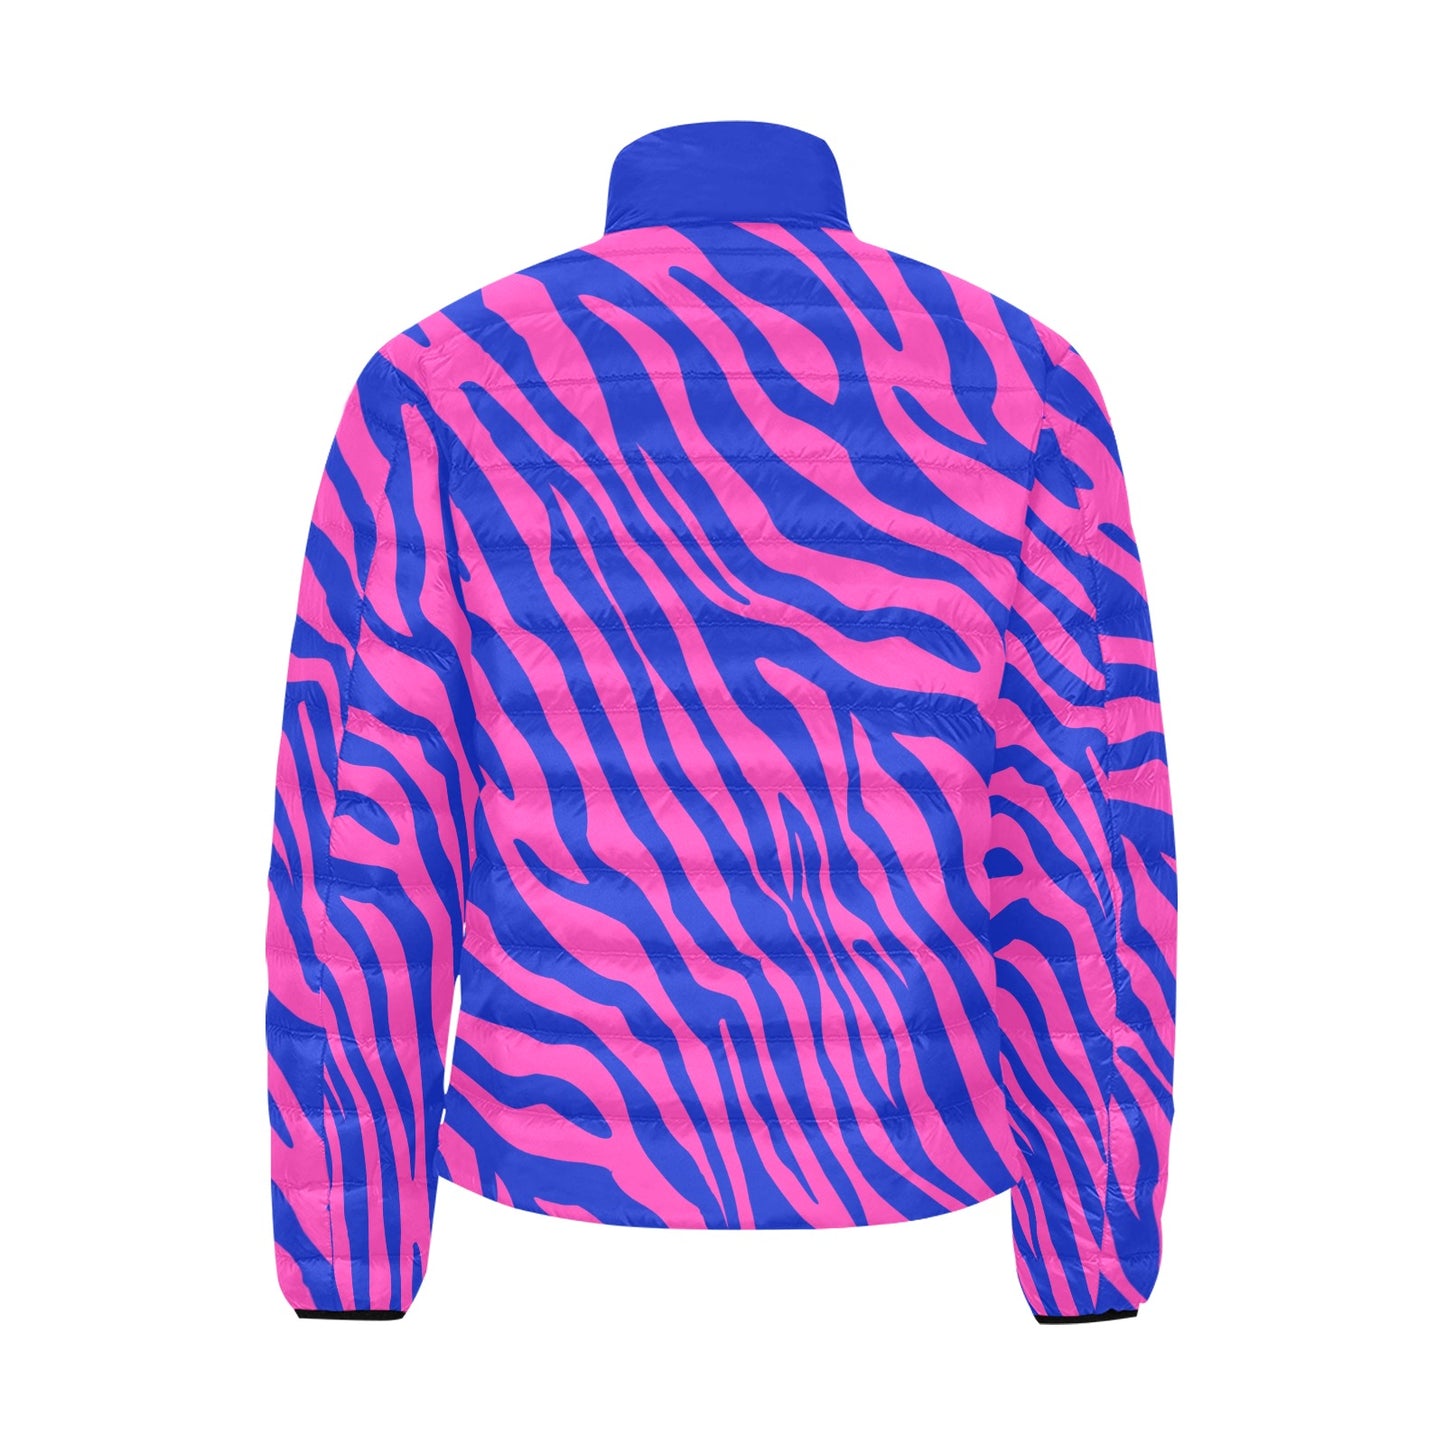 Electric Zebra Lightweight Puffer Jacket